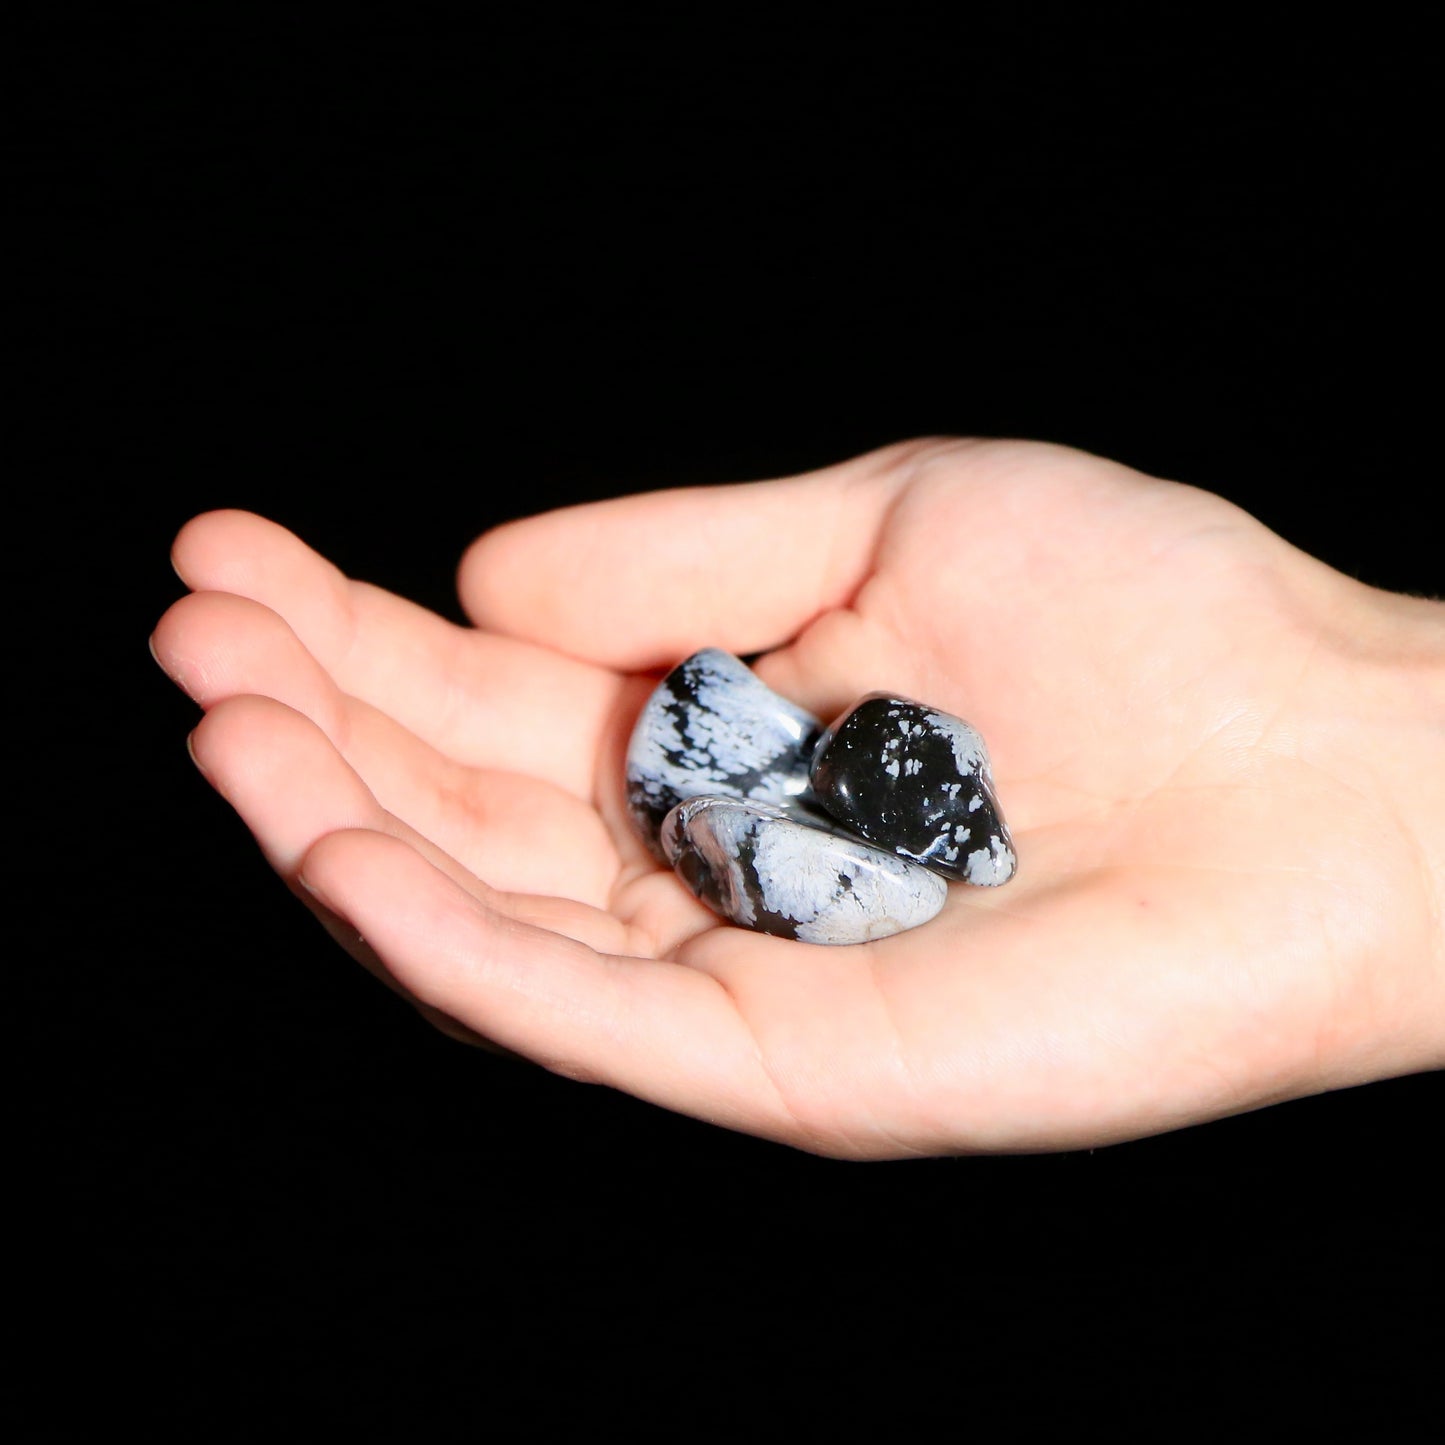 Snowflake Obsidian Tumbled (medium)